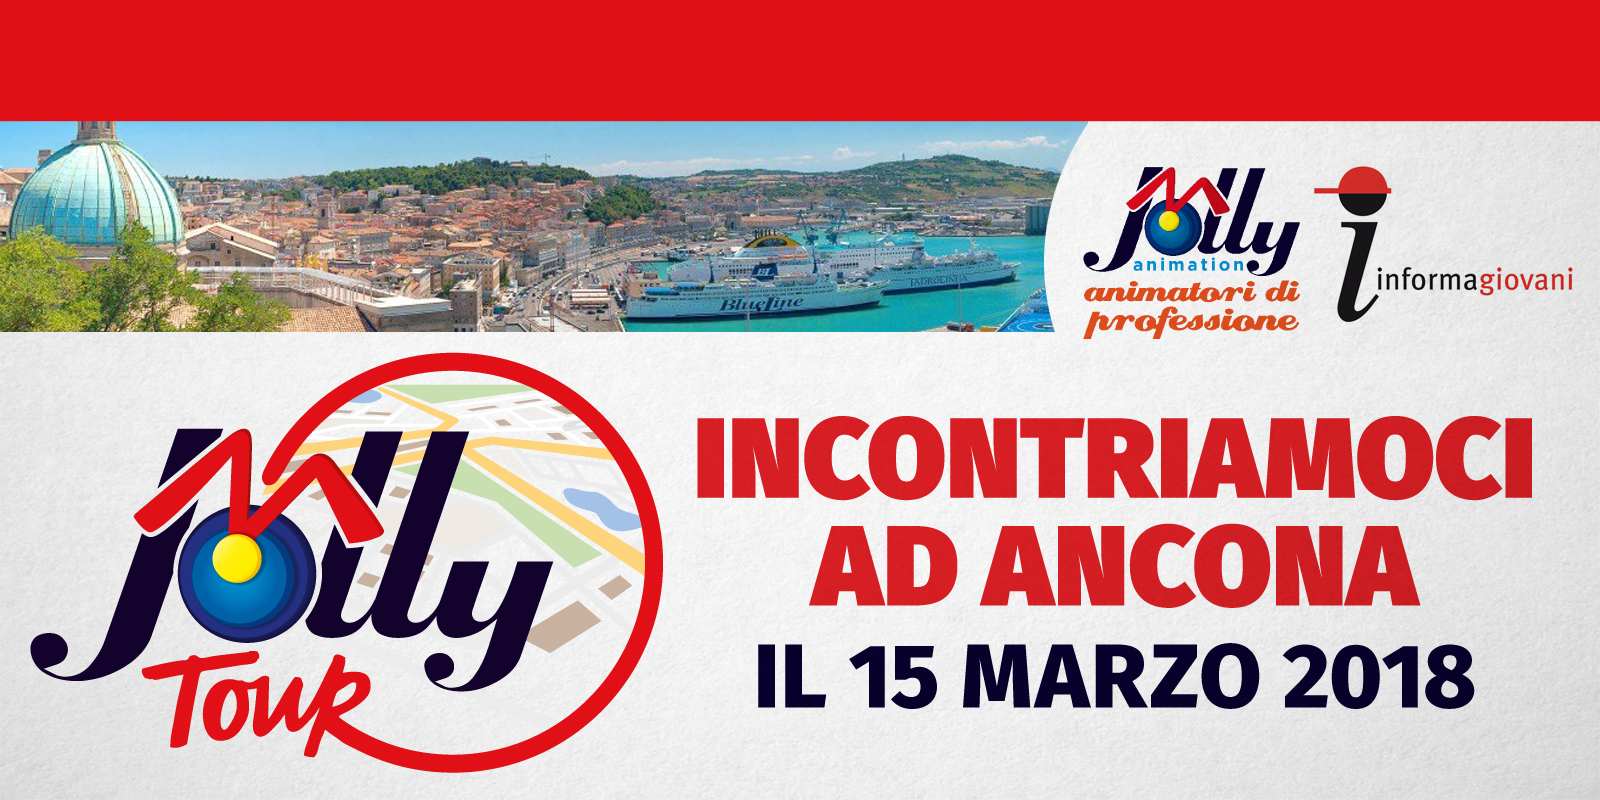 Il 15 marzo siamo ad Ancona